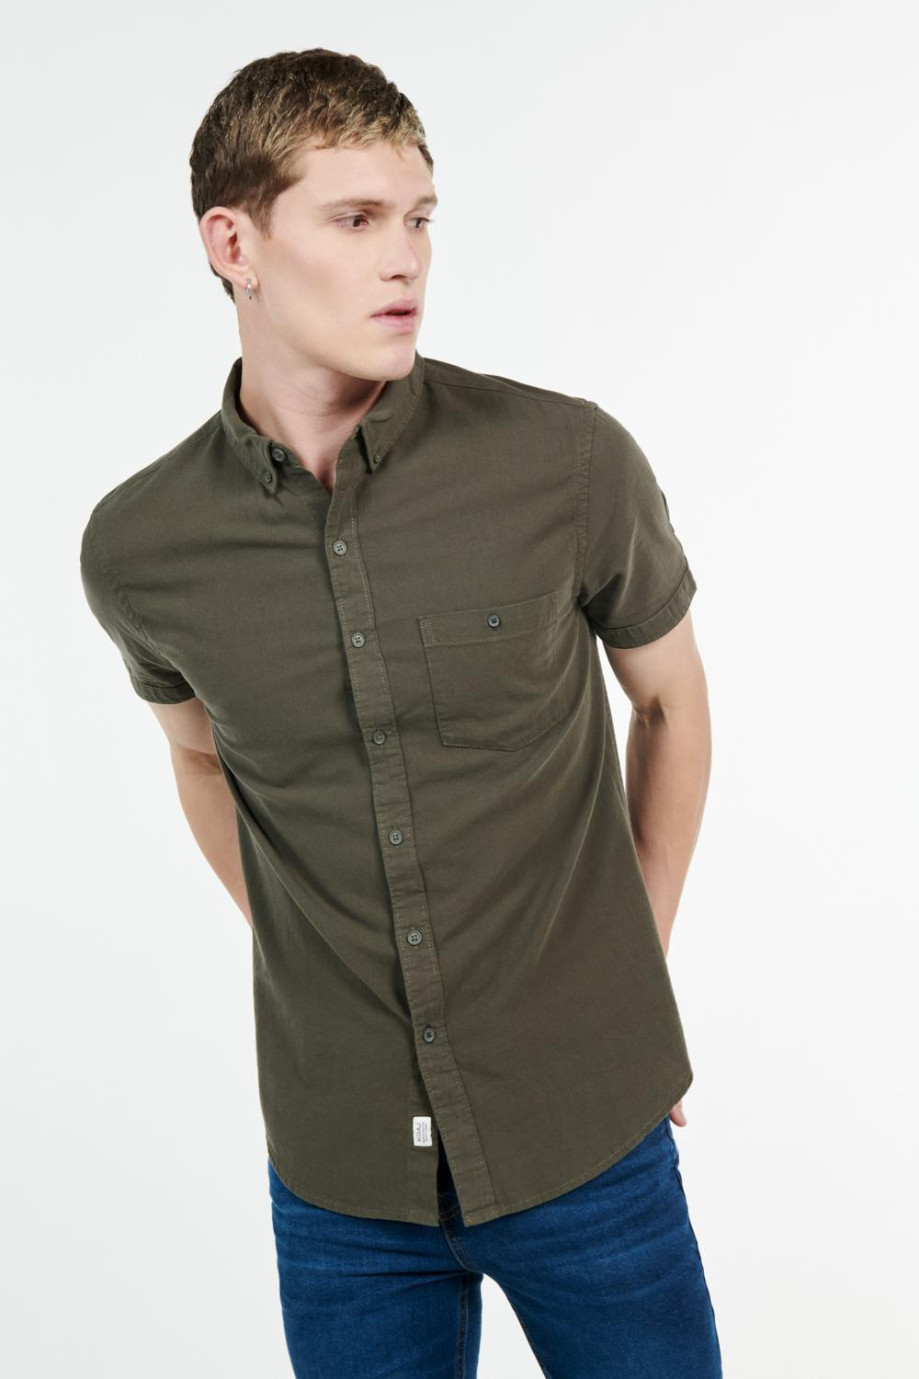 Camisa con cuello button down manga corta con diferentes colores solidos para las diferentes ocasiones de uso.